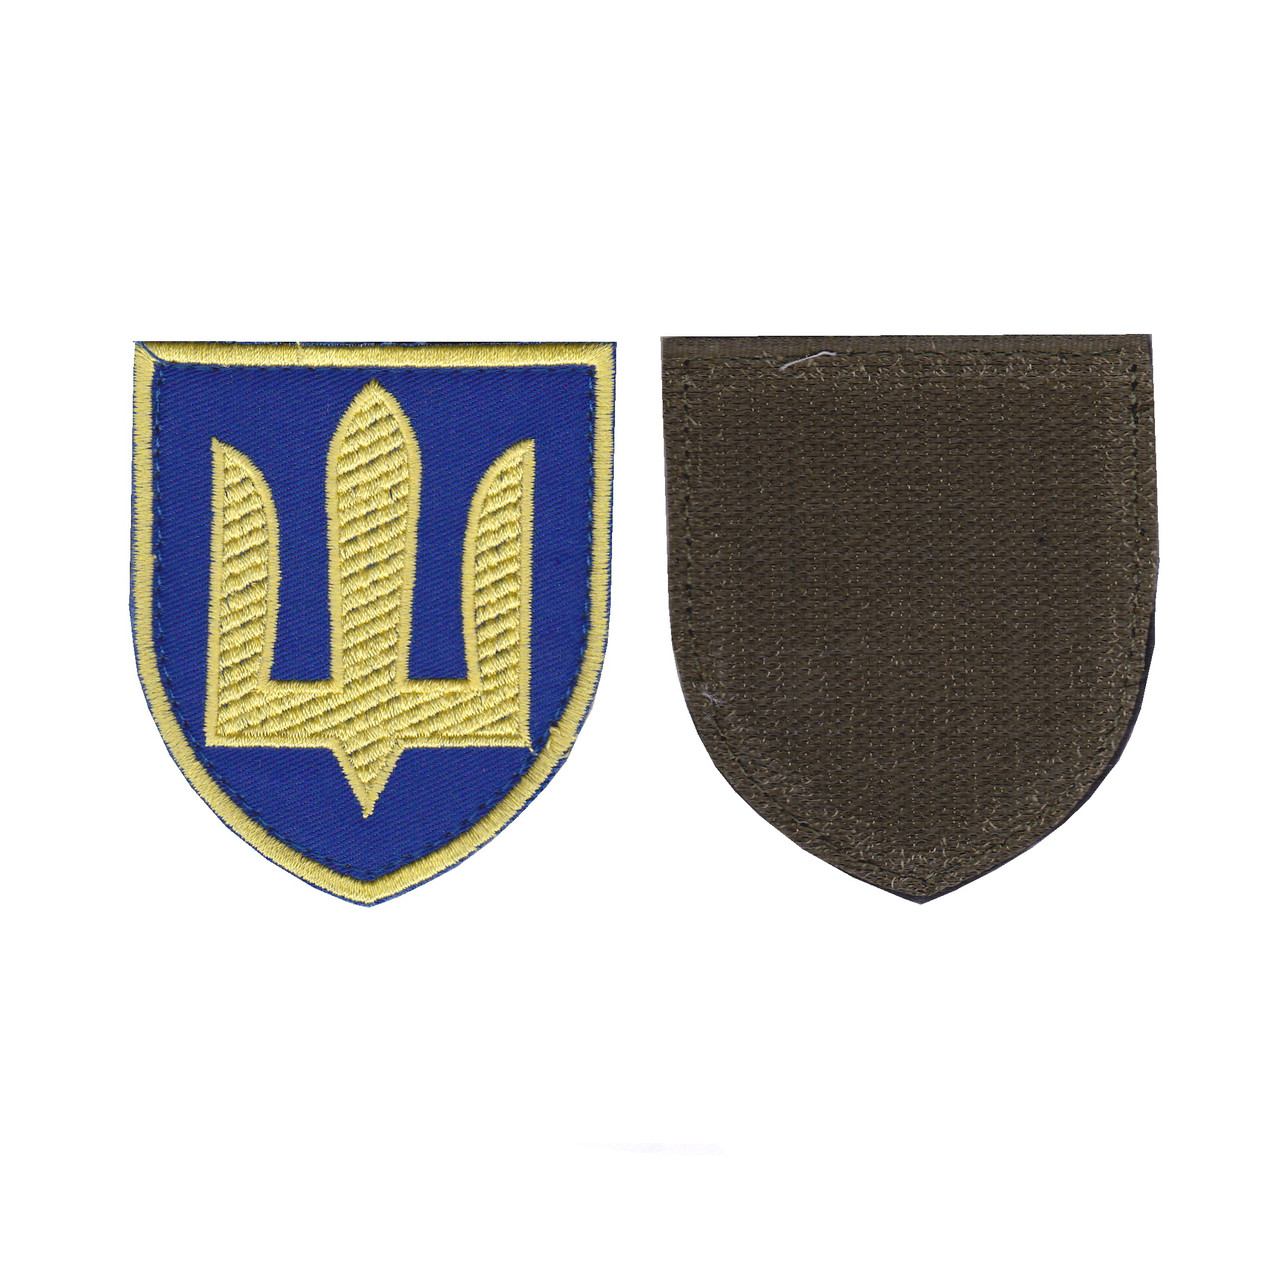 Шеврон військовий / армійський, тризуб Апарат Головнокомандувача, на синьому фоні, ЗСУ. 8 см * 7 см